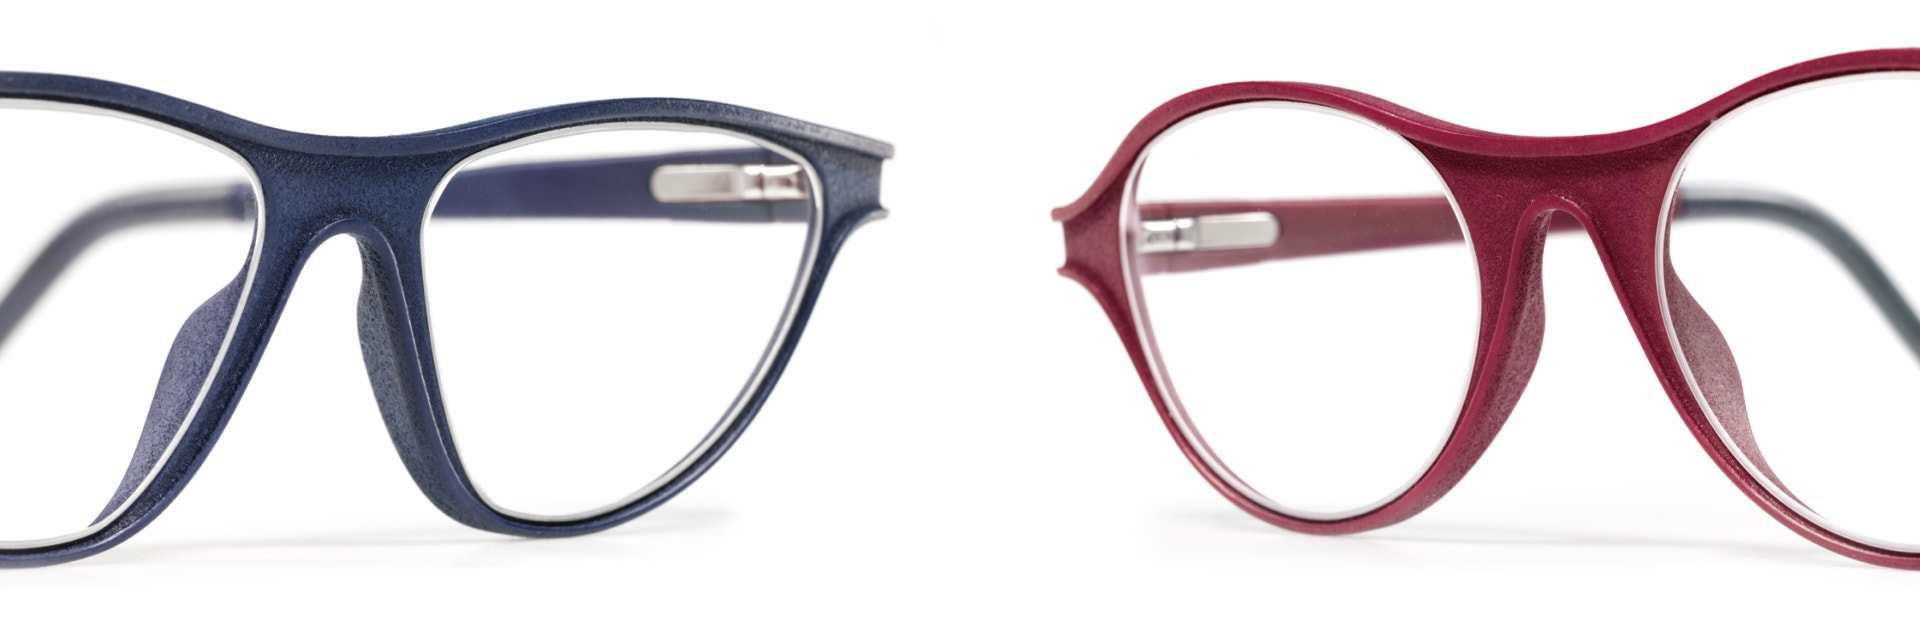 Luxura仕上げの3D造形アイウェア フレーム2 組(1 つはジーンズ ブルー、もう1つはラズベリー レッド)